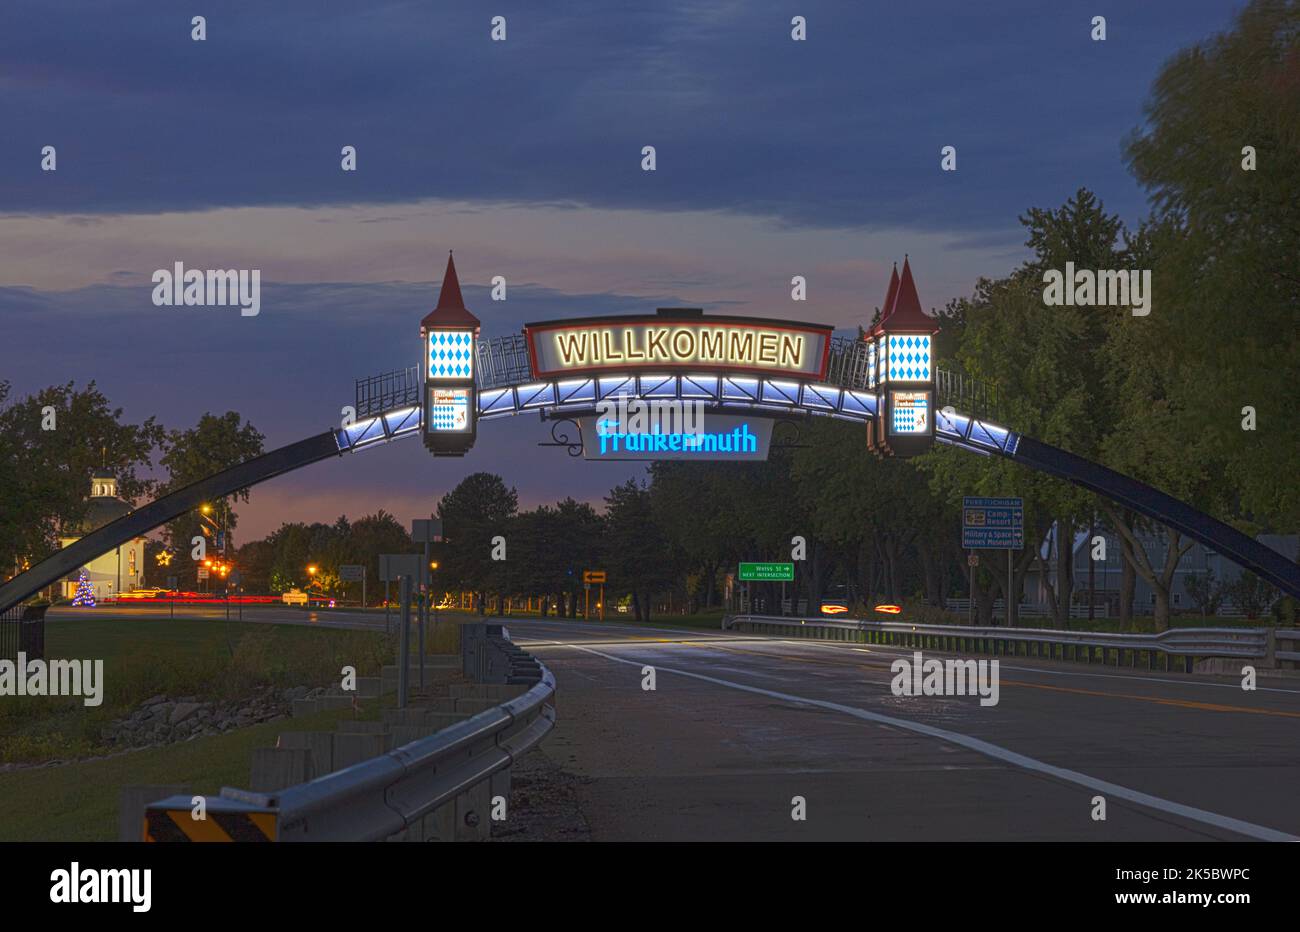 Das Frankenmuth-Begrüßungsschild auf der anderen Seite der Straße beleuchtet nachts Willkommen nach Frankenmuth Michigan USA in Michigan's Little Bavaria Stockfoto